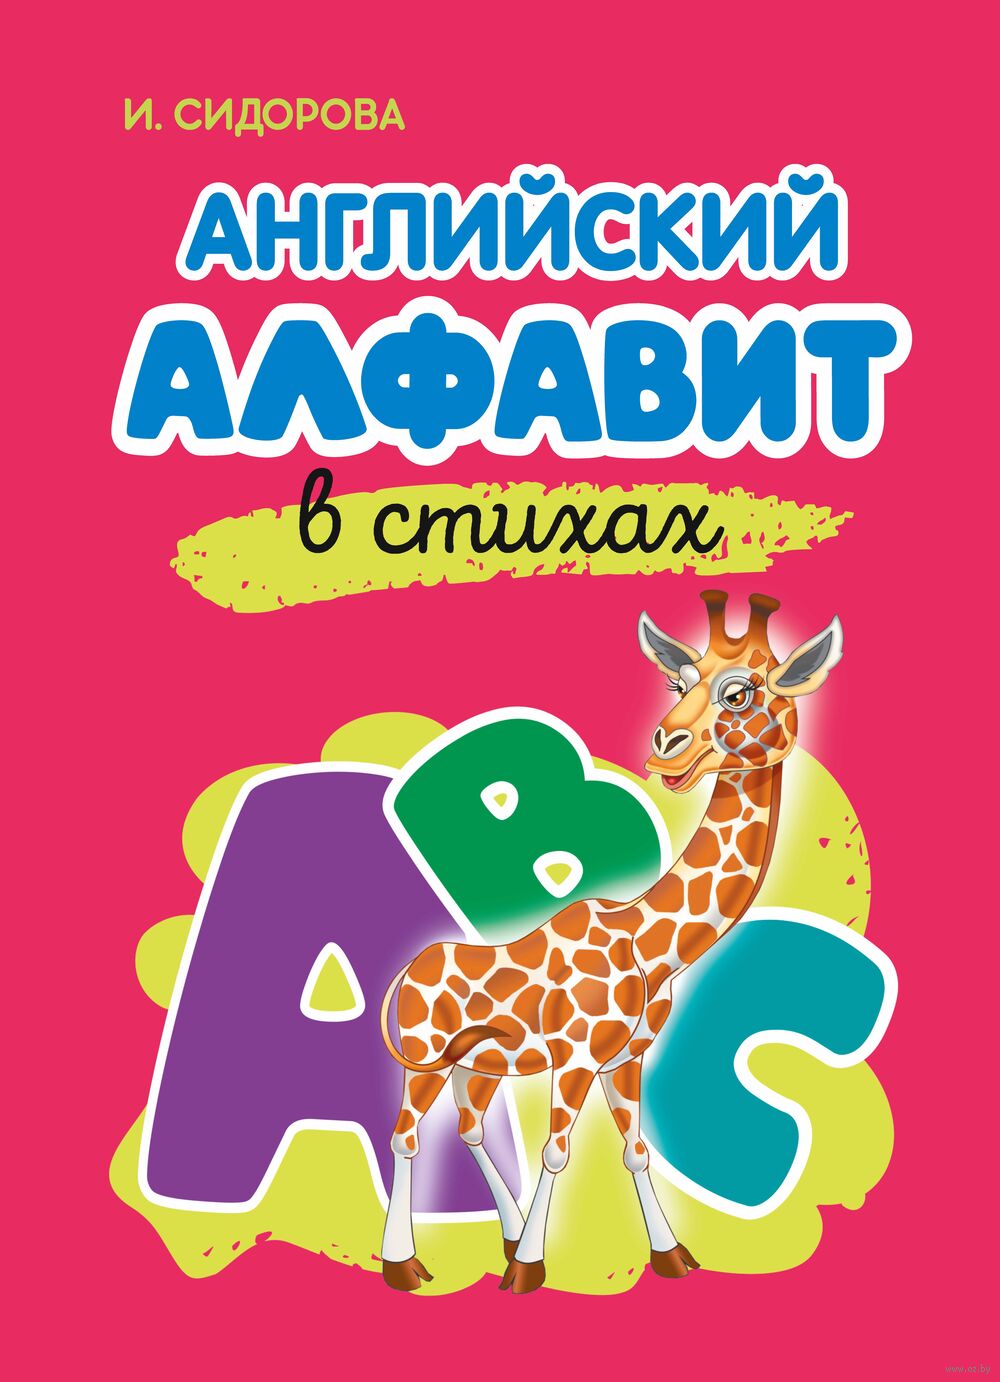 Английская азбука от А до Z (Г. П. Шалаева) ; Издательство АСТ, 2010